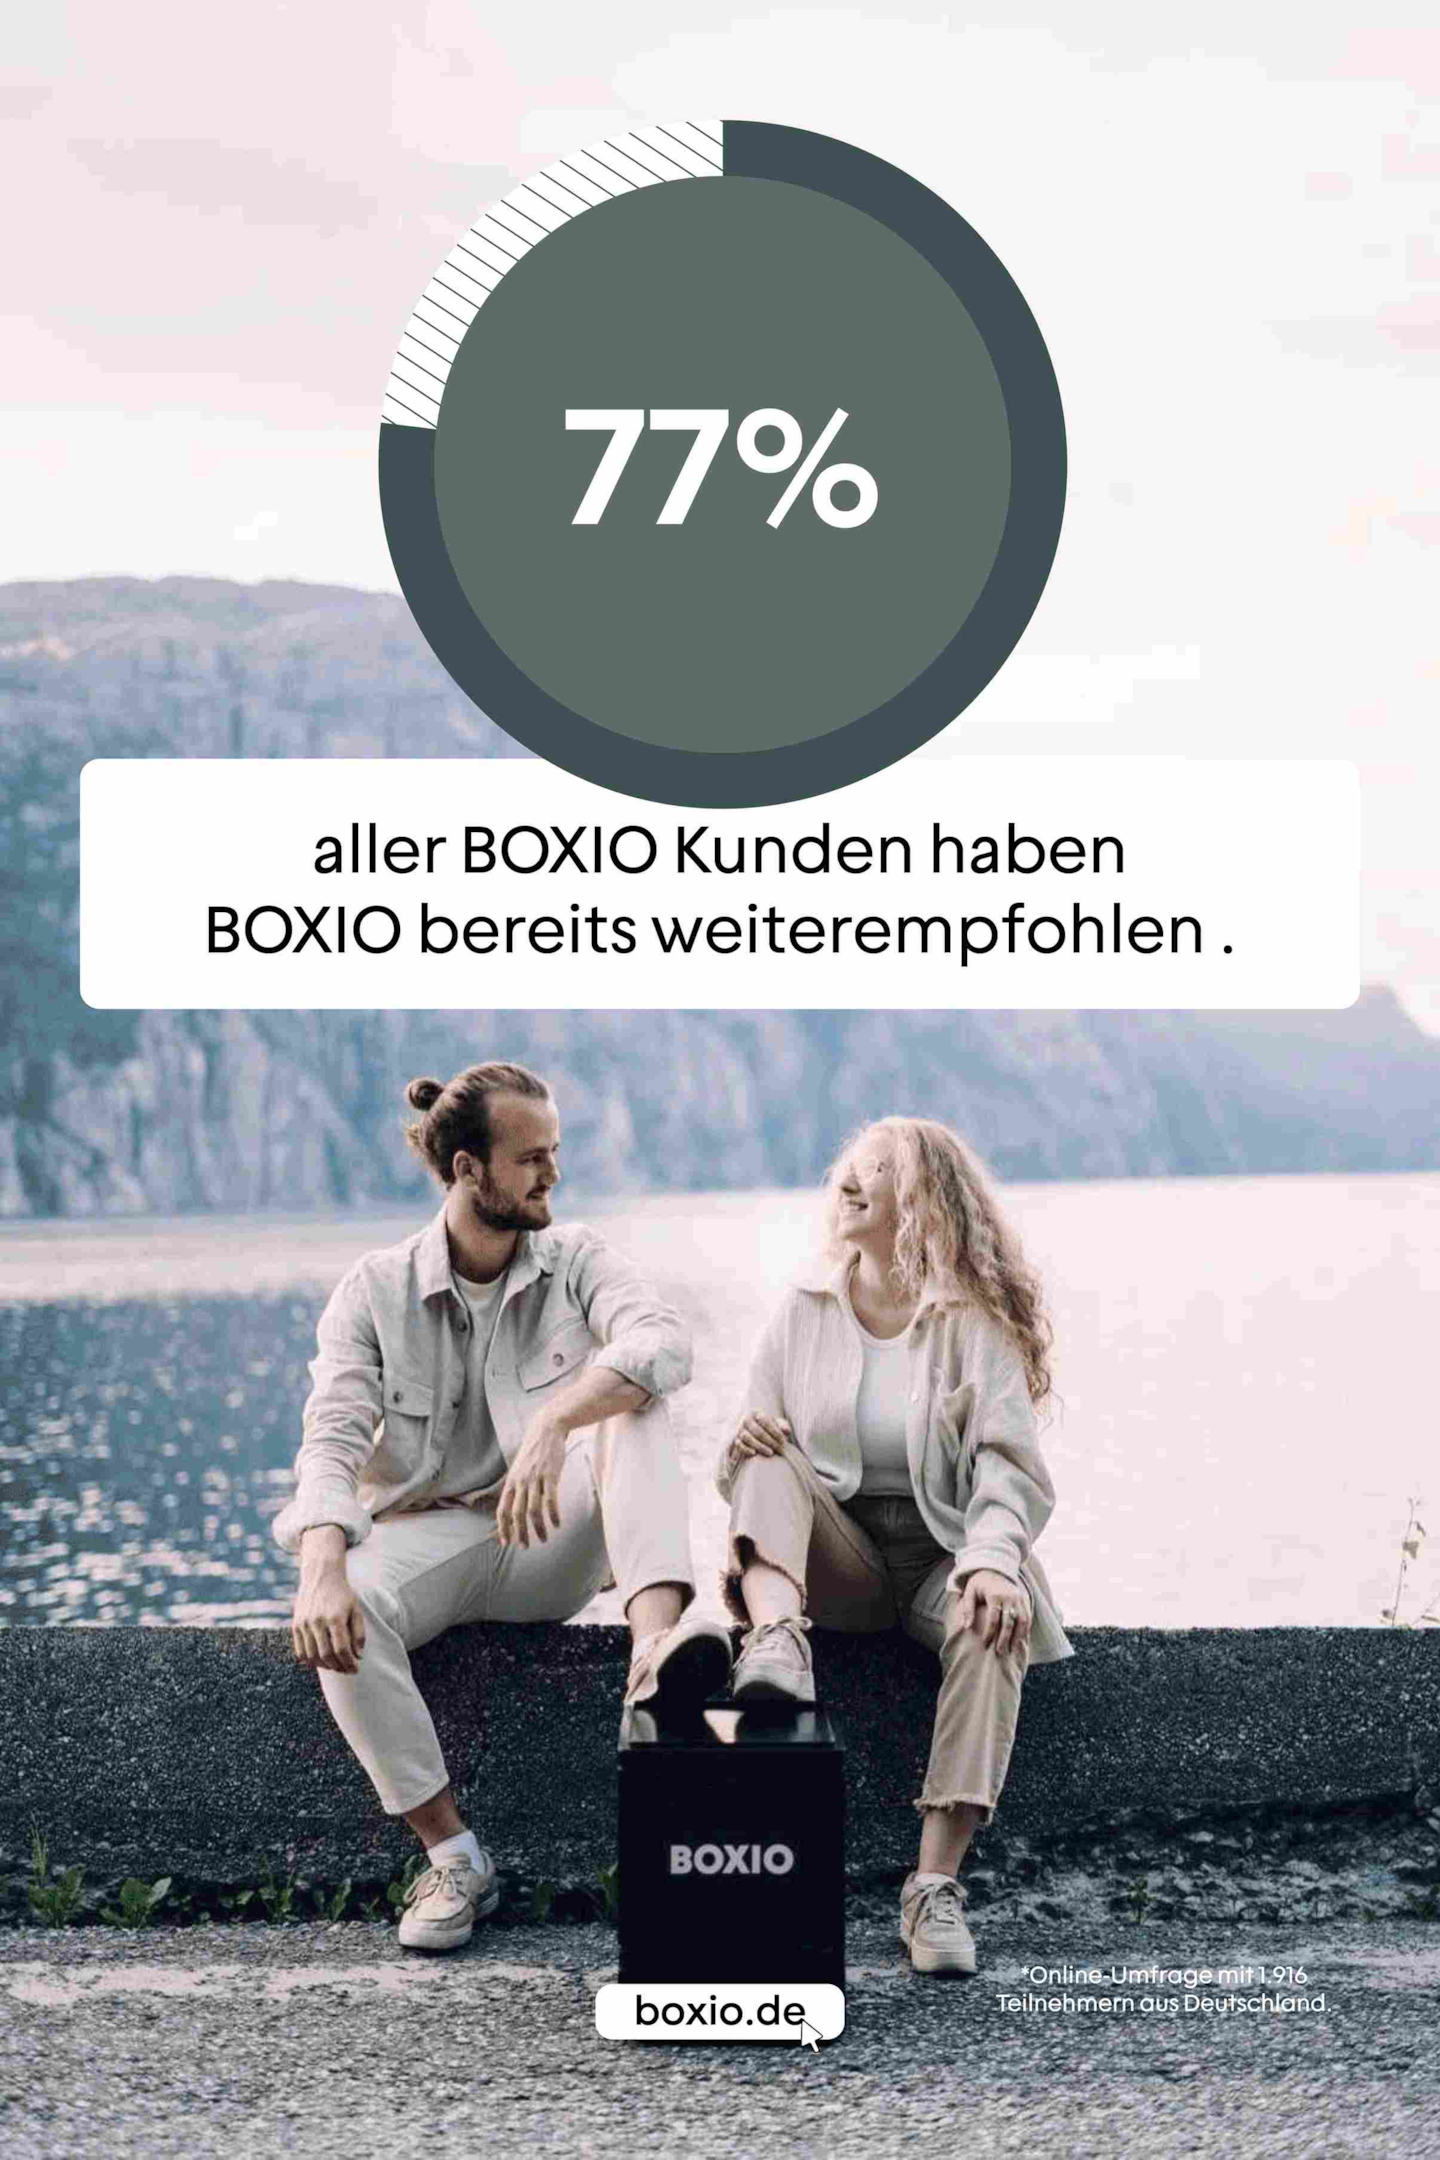 Pärchen am See mit BOXIO-Toilet, Text: 77% aller BOXIO Kunden haben BOXIO bereits weiterempfohlen